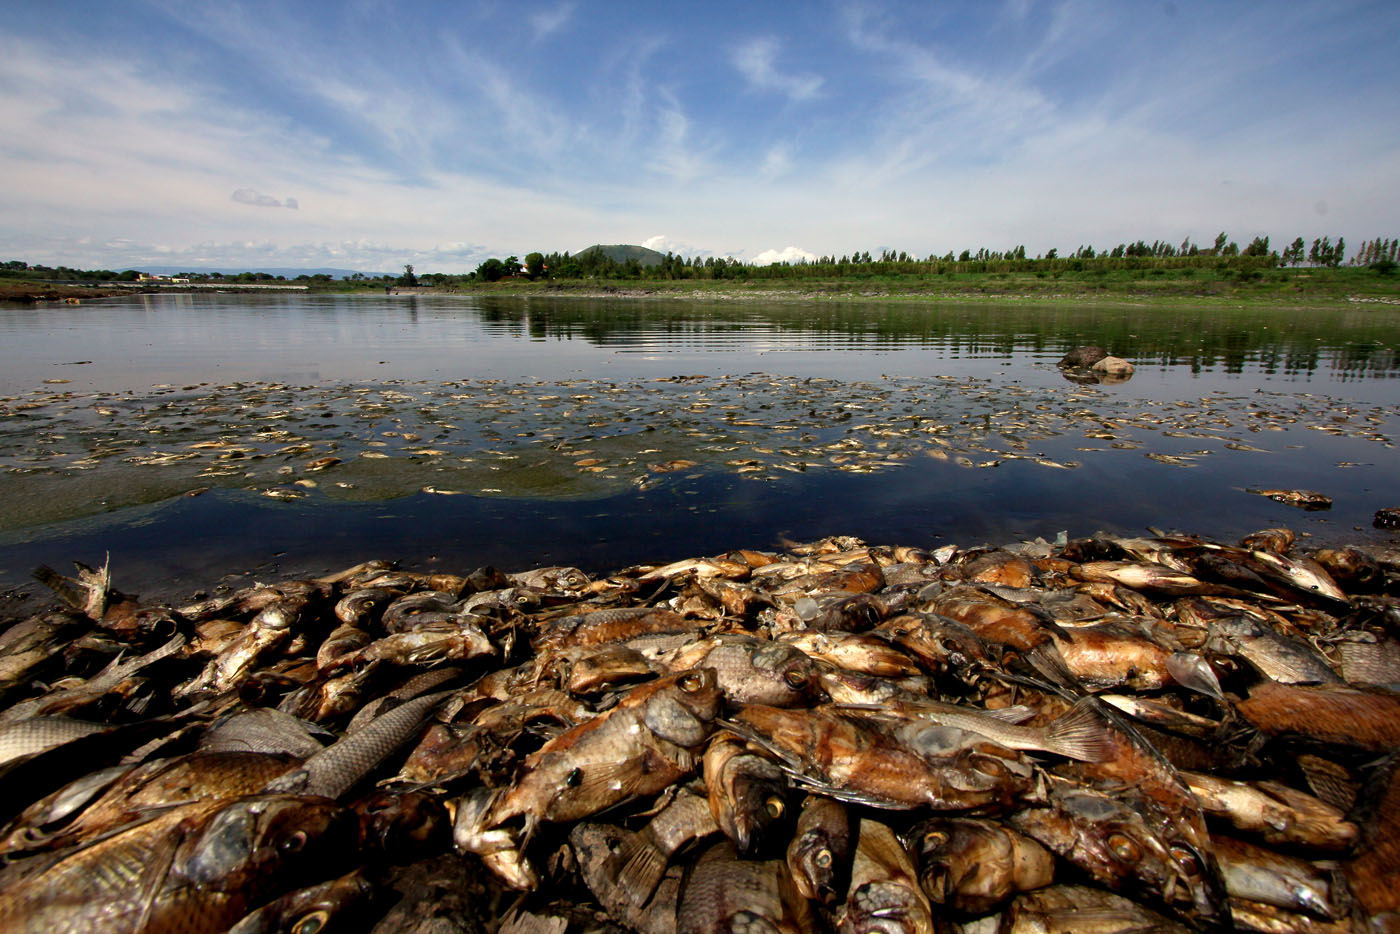 La represa de México donde murieron todos los peces (Fotos)